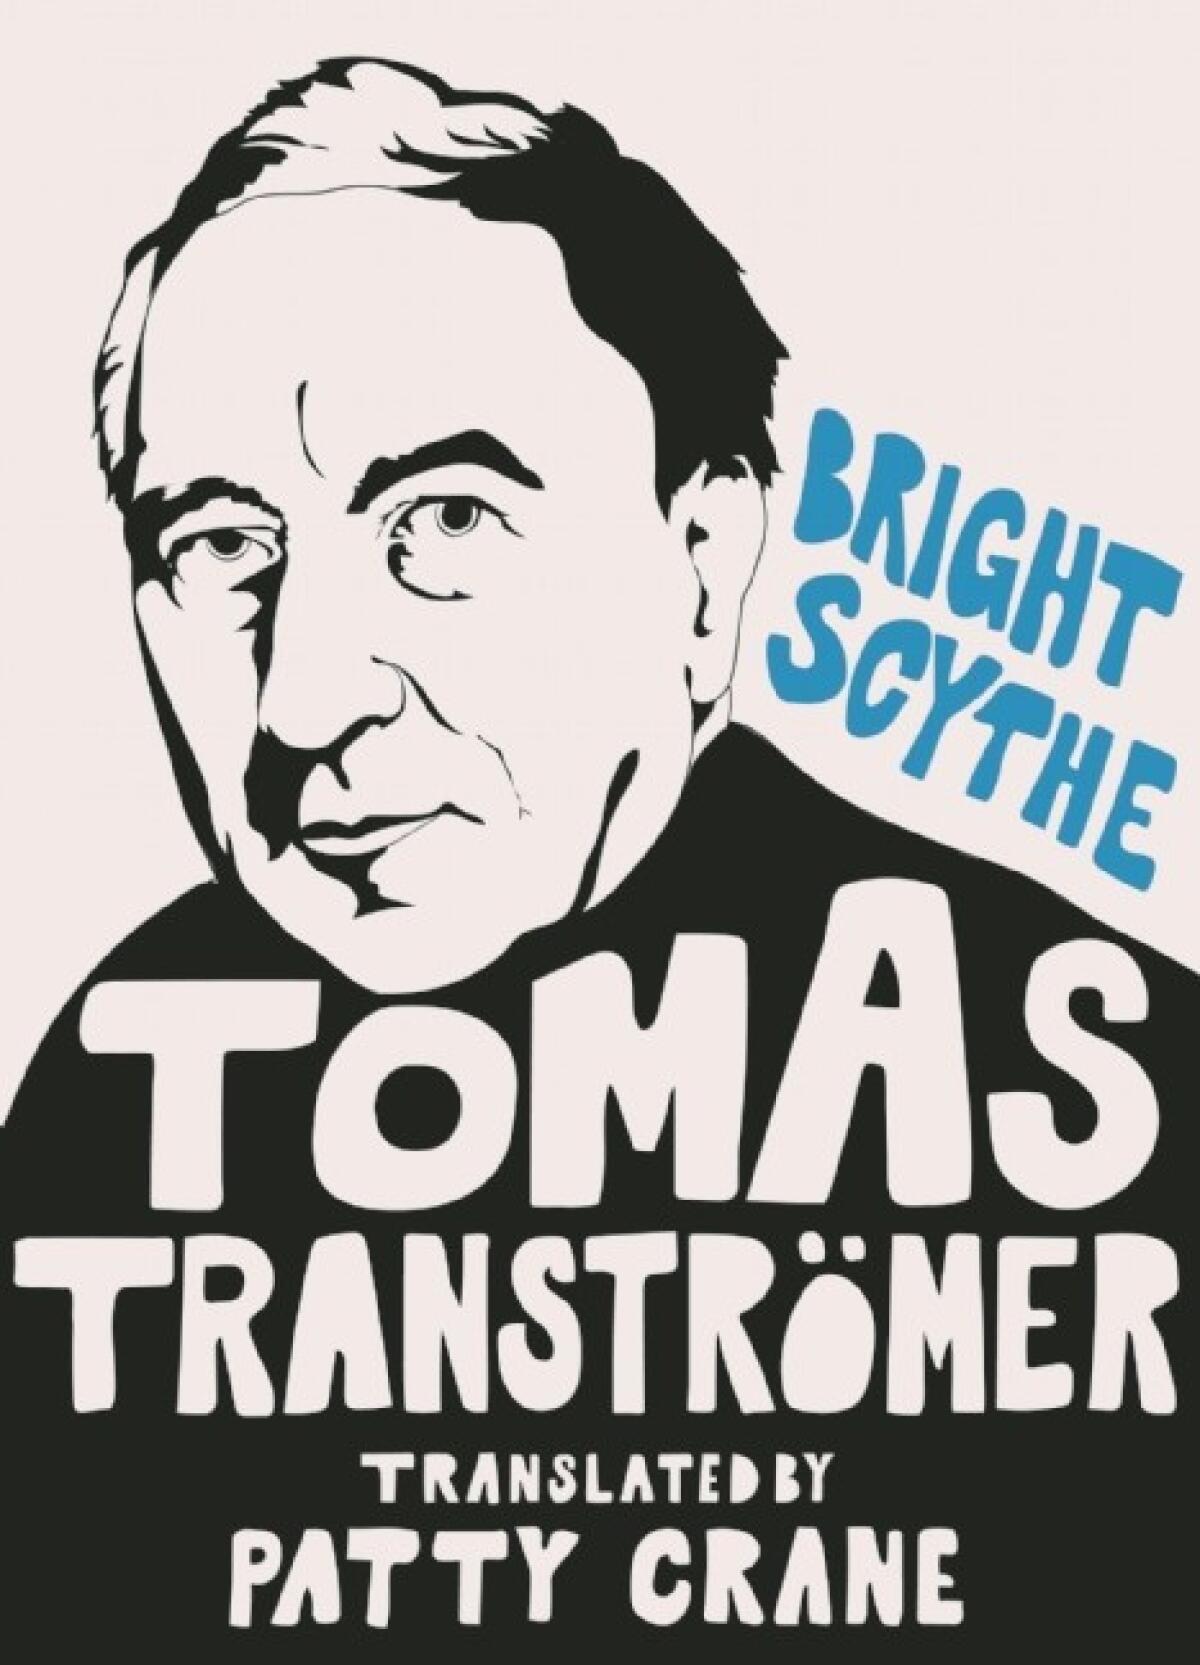 "Bright Scythe" by Tomas Tranströmer